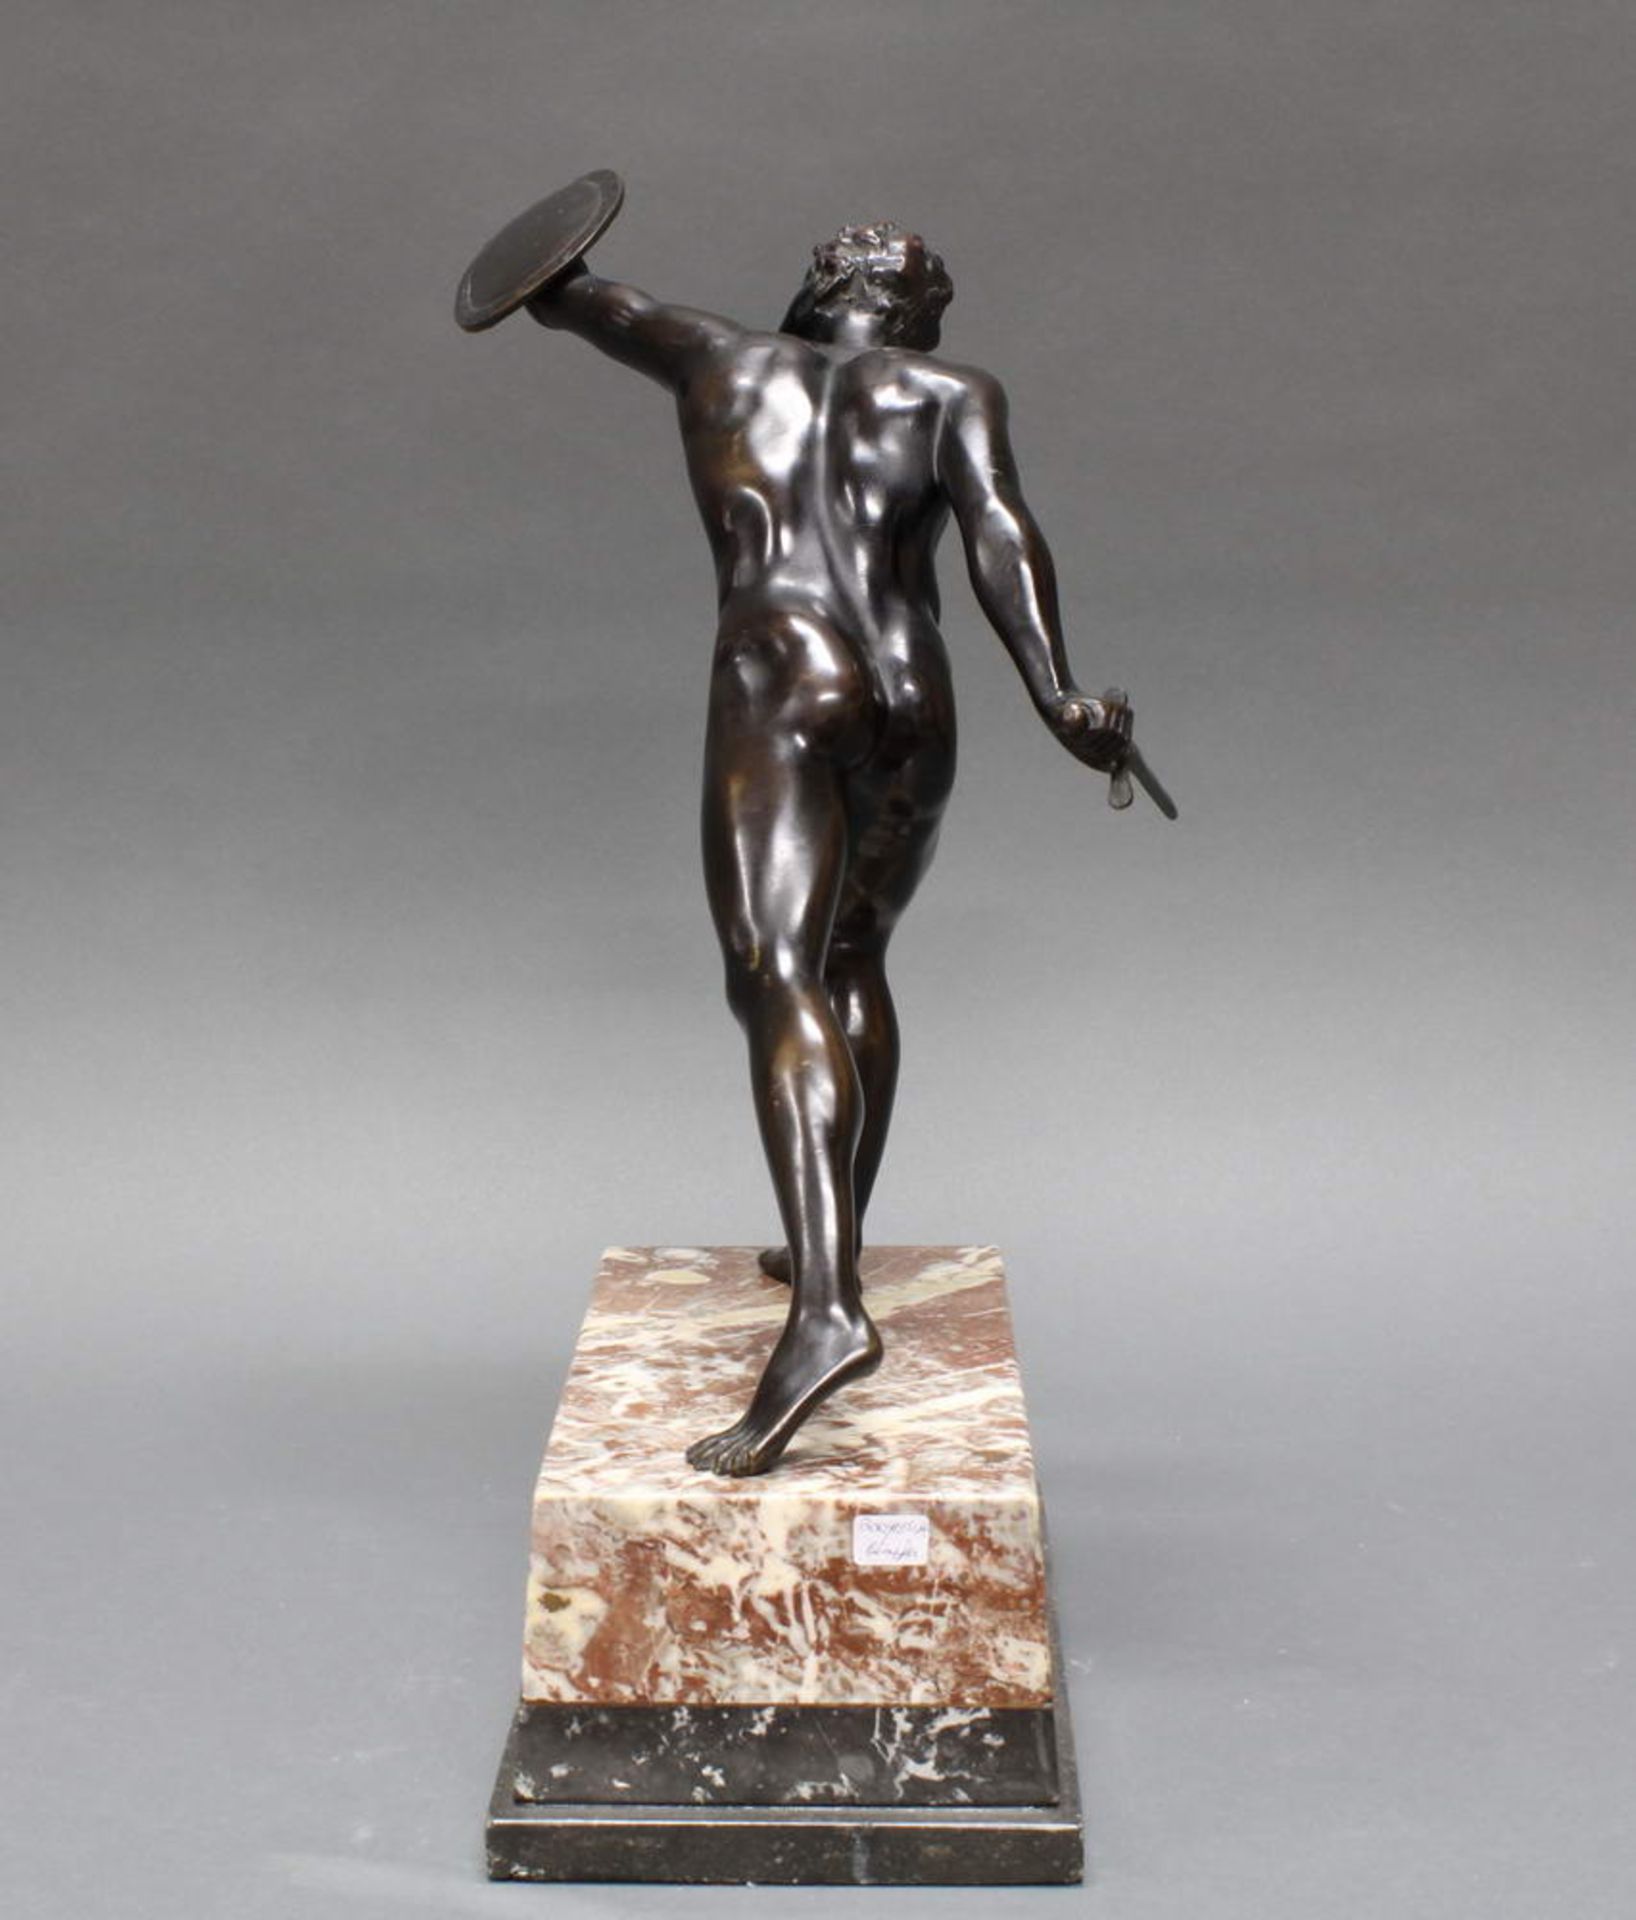 Bronze, dunkelbraun patiniert, "Borghesischer Fechter", nach der antiken Figur, auf Steinsockel, - Image 6 of 6